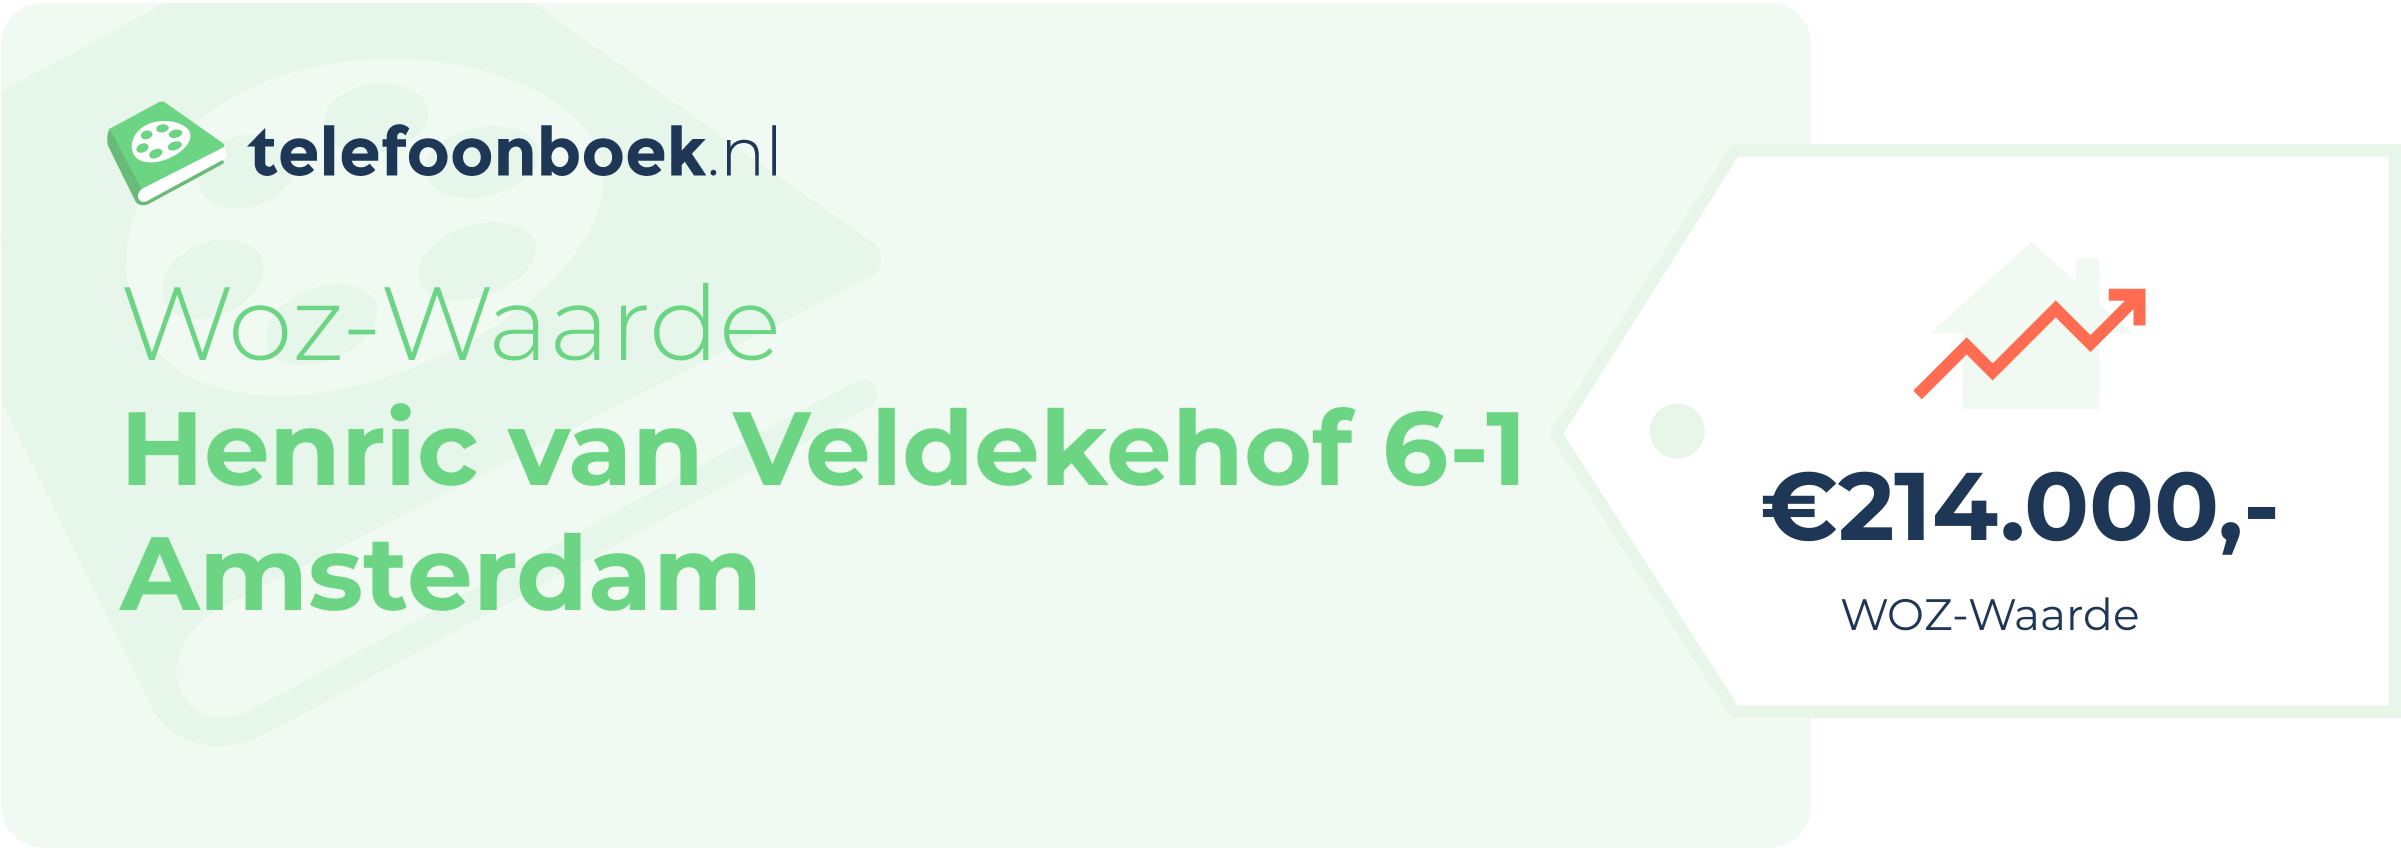 WOZ-waarde Henric Van Veldekehof 6-1 Amsterdam